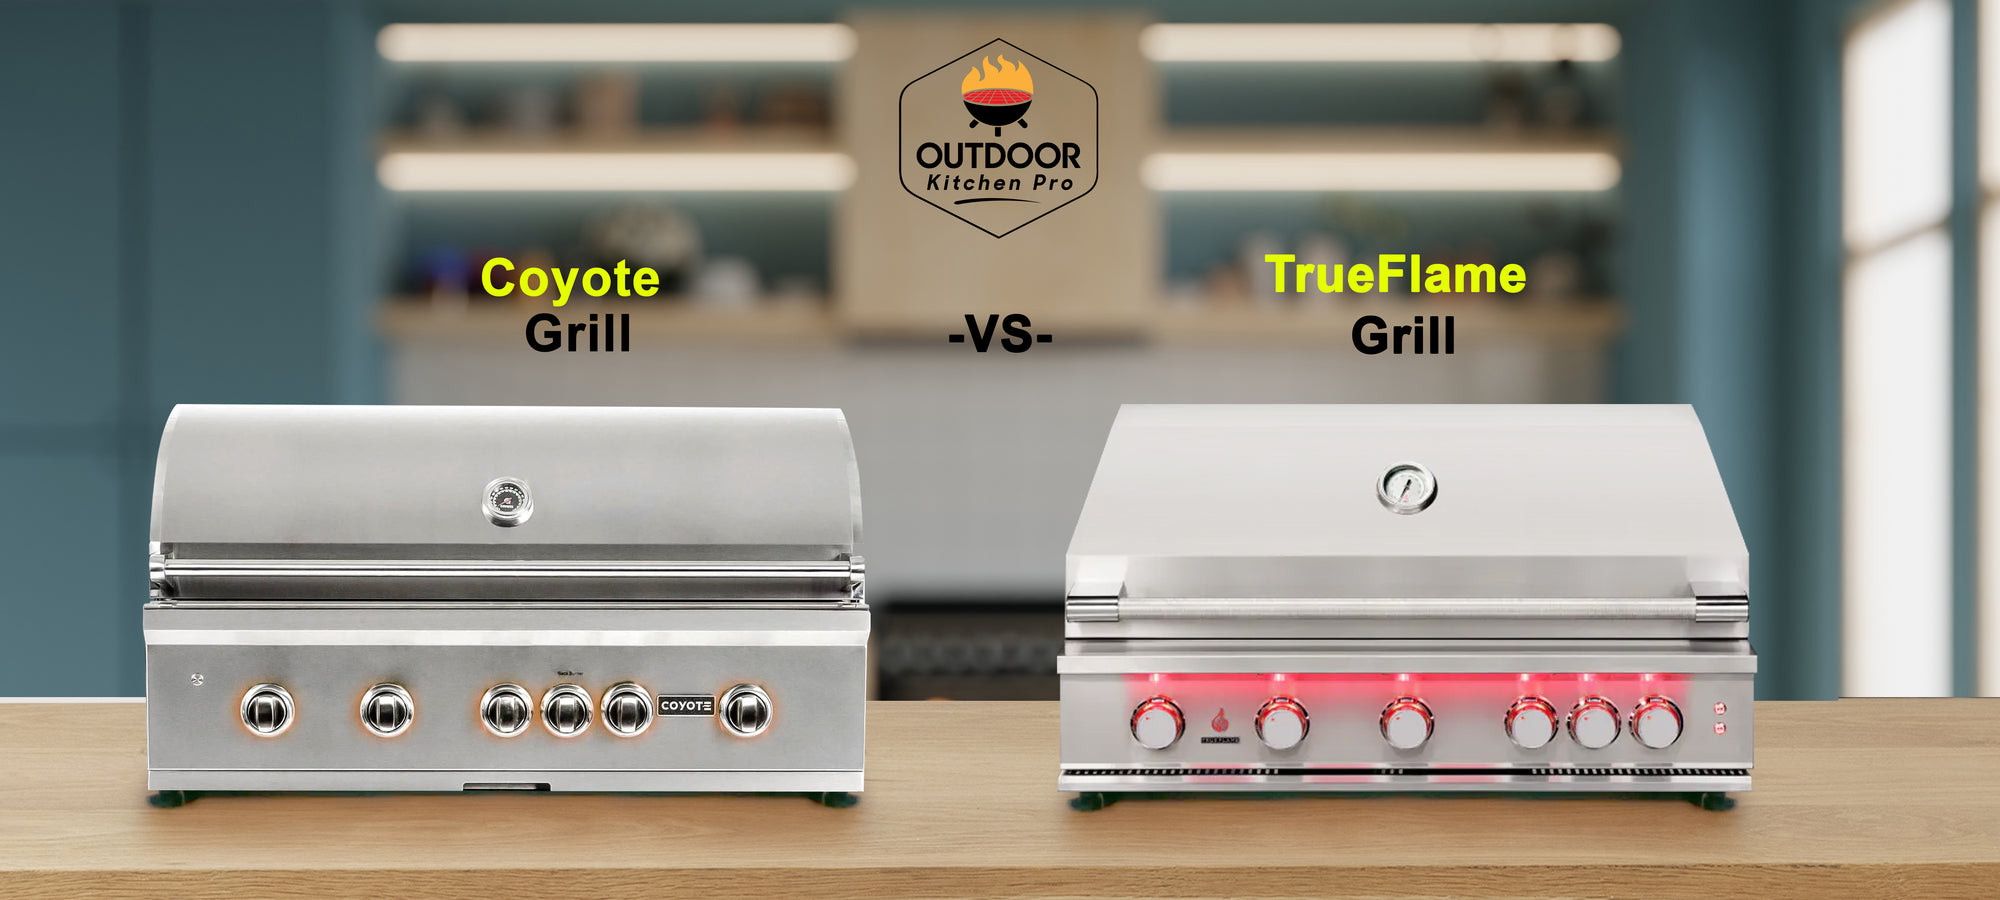 TrueFlame Grill vs. Coyote Grills Comparison